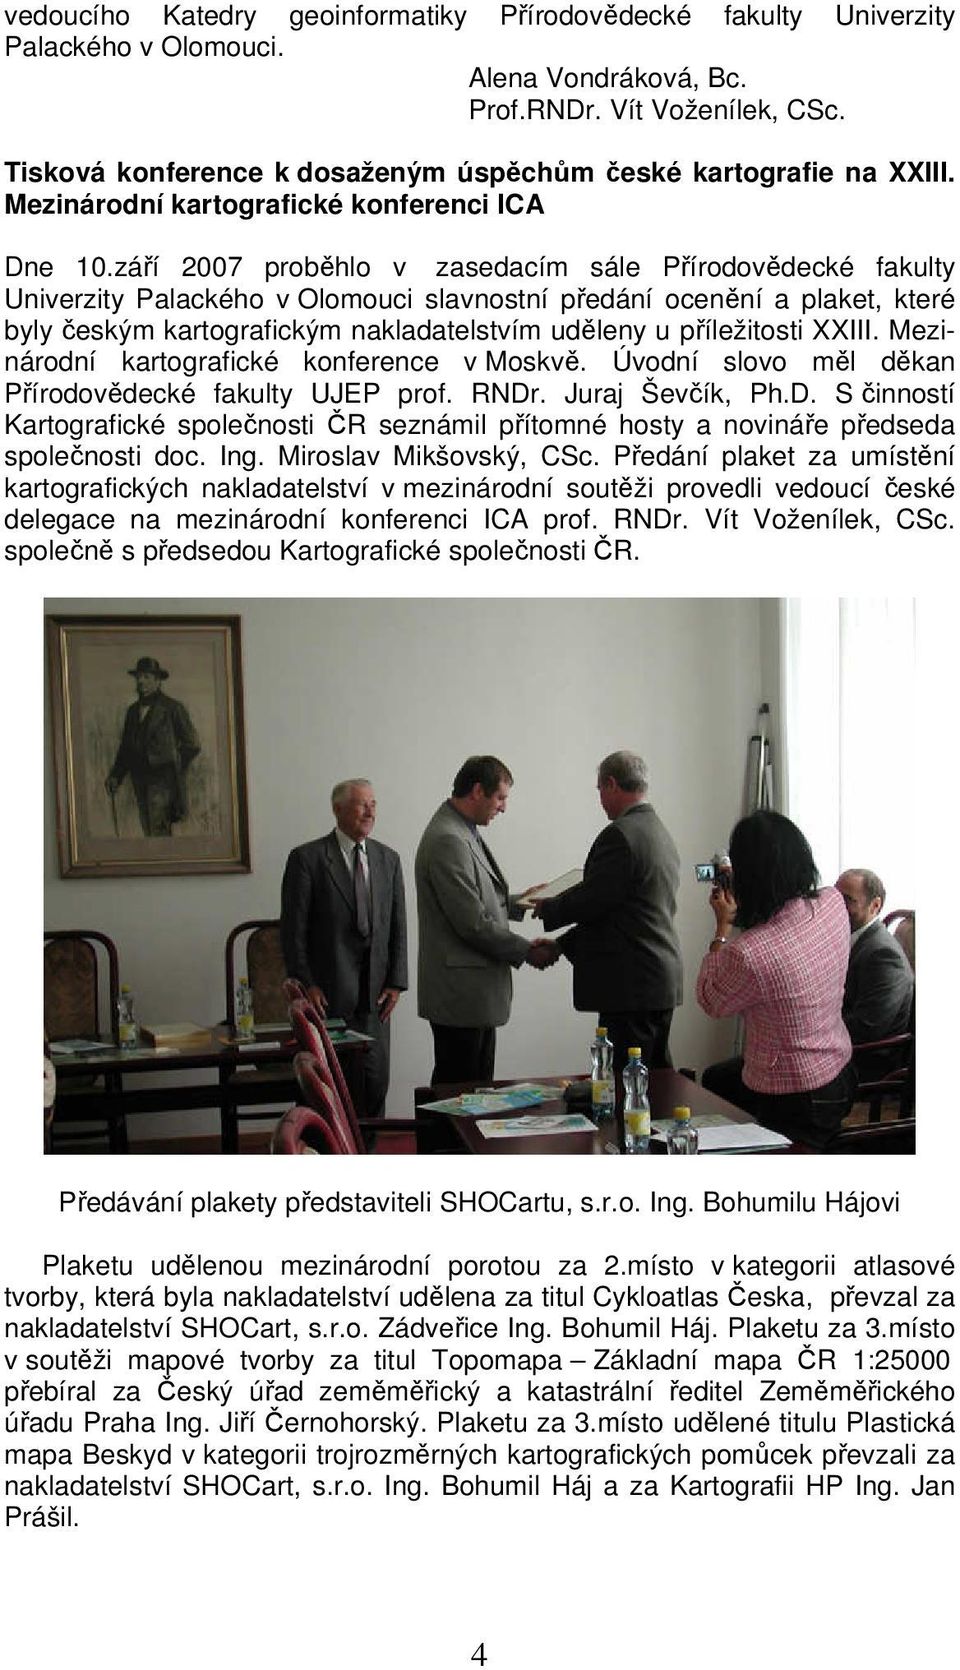 září 2007 proběhlo v zasedacím sále Přírodovědecké fakulty Univerzity Palackého v Olomouci slavnostní předání ocenění a plaket, které byly českým kartografickým nakladatelstvím uděleny u příležitosti